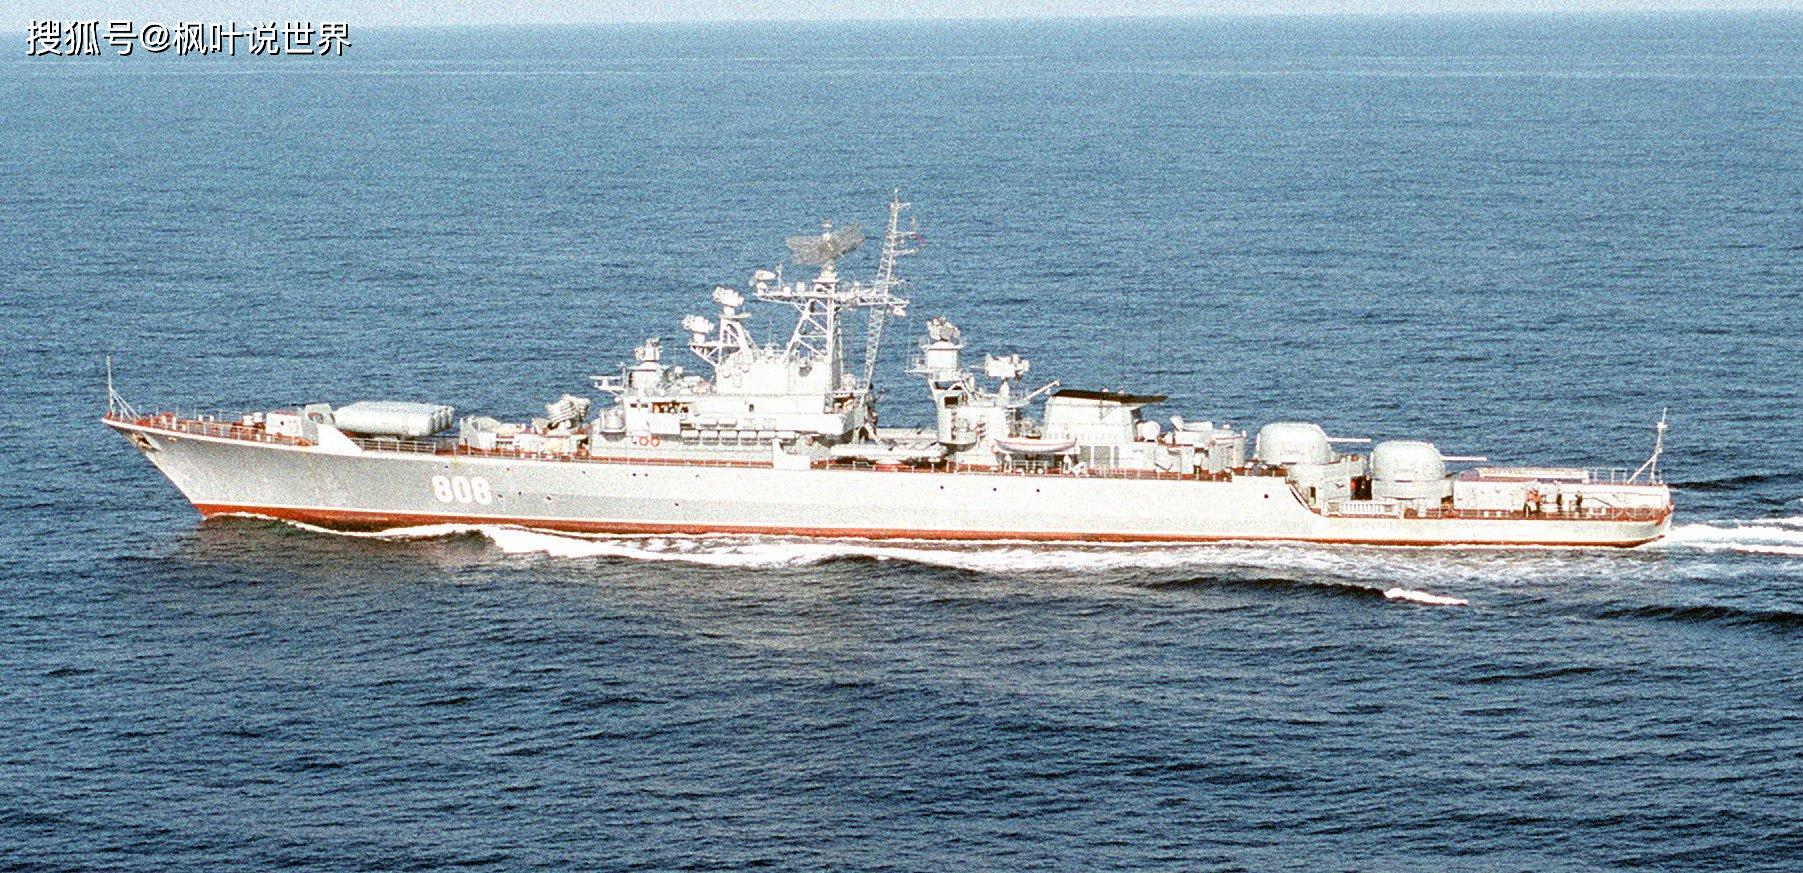 原创朝鲜海军实力如何,拥有多少艘舰艇,是一堆生锈的钢铁吗?